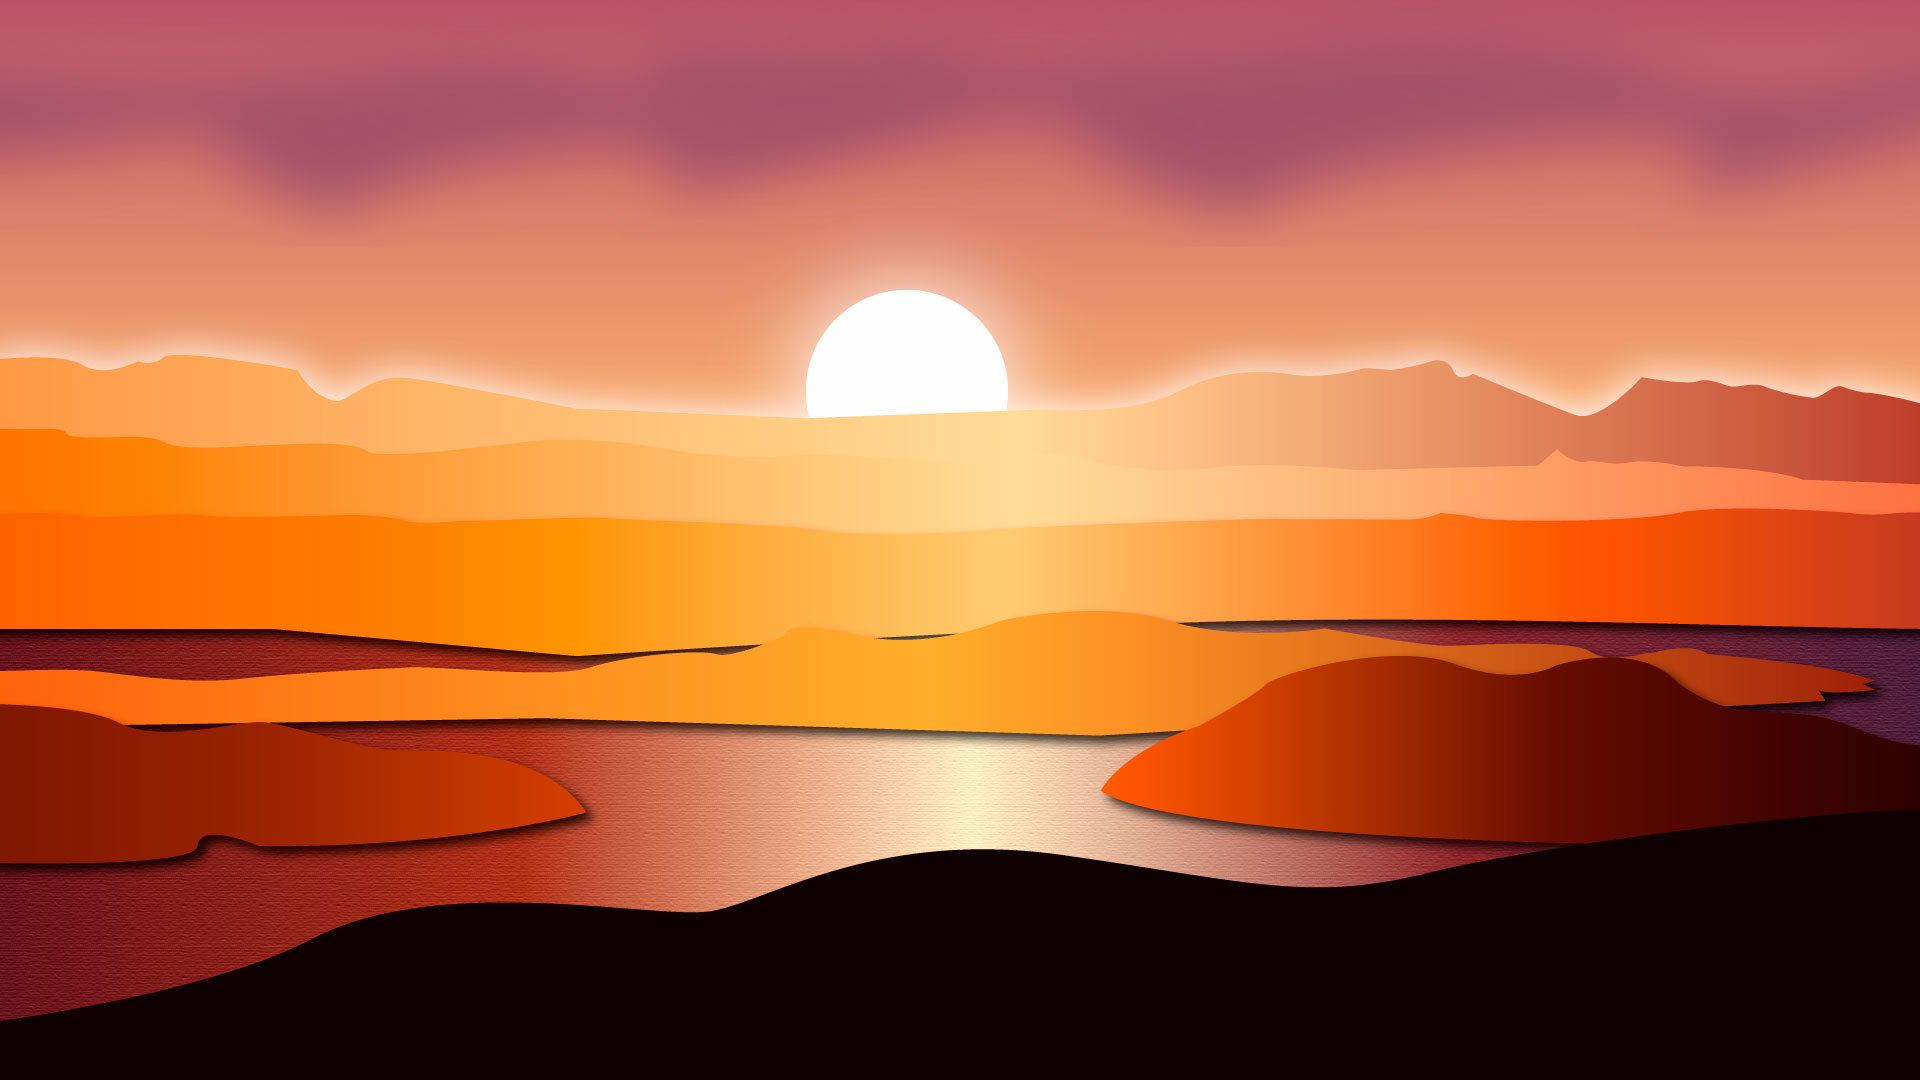 Digital Art: Sunset Wallpaper